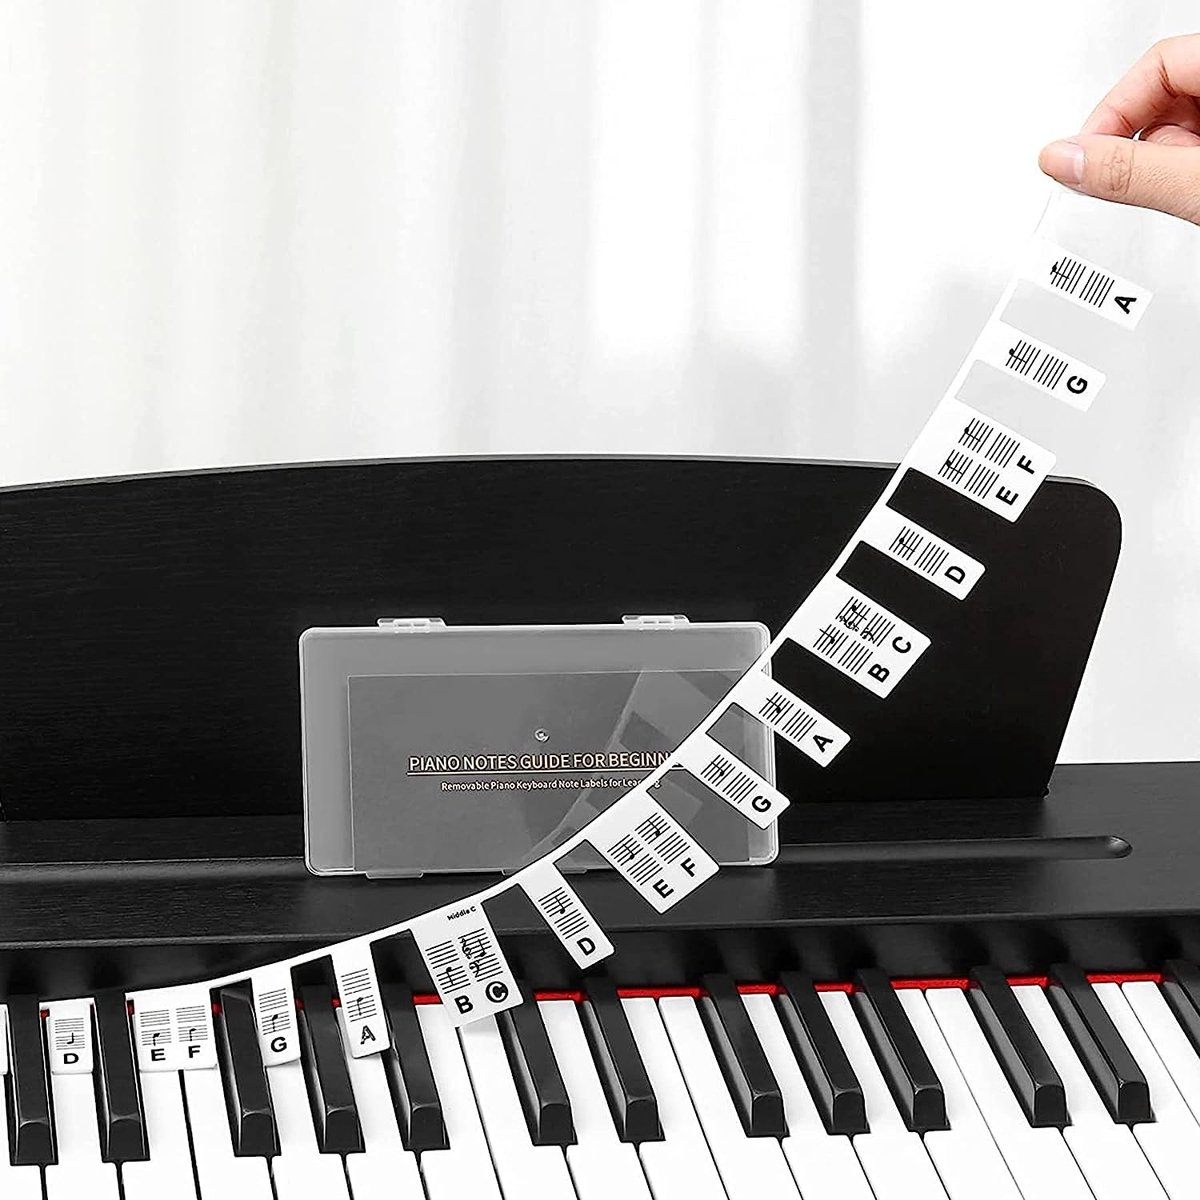 AUTOCOLLANTS PIANO ~ KEYNOTES étiquettes clavier note de musique